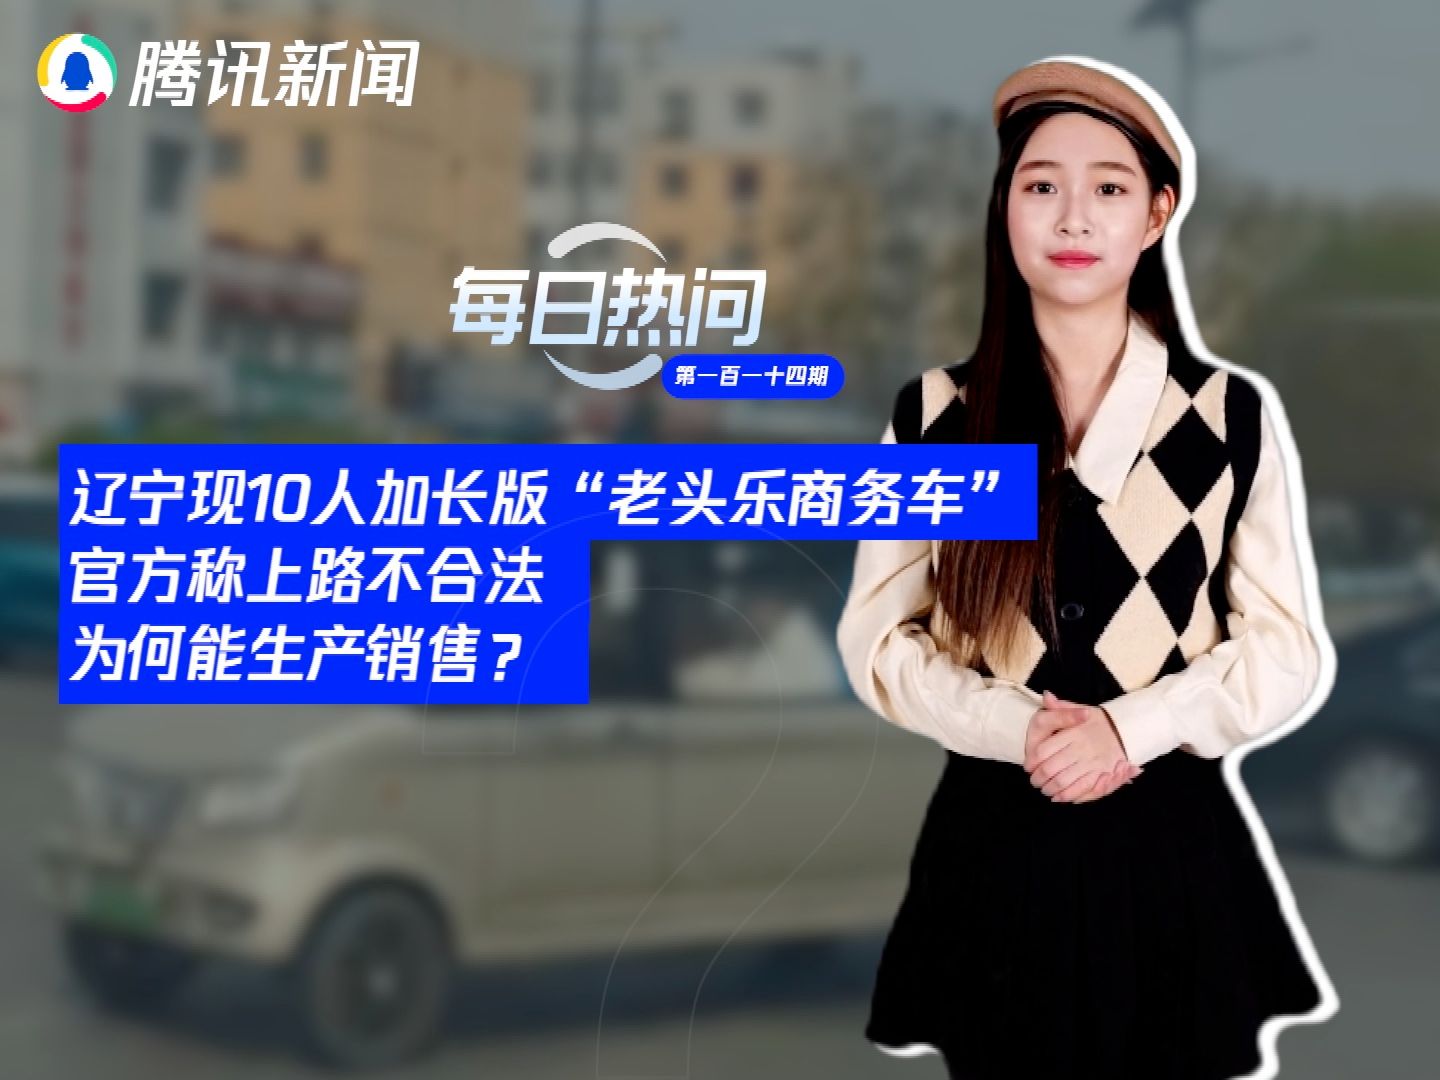 辽宁现10人加长版“老头乐商务车”，官方称上路不合法，为何能生产销售？